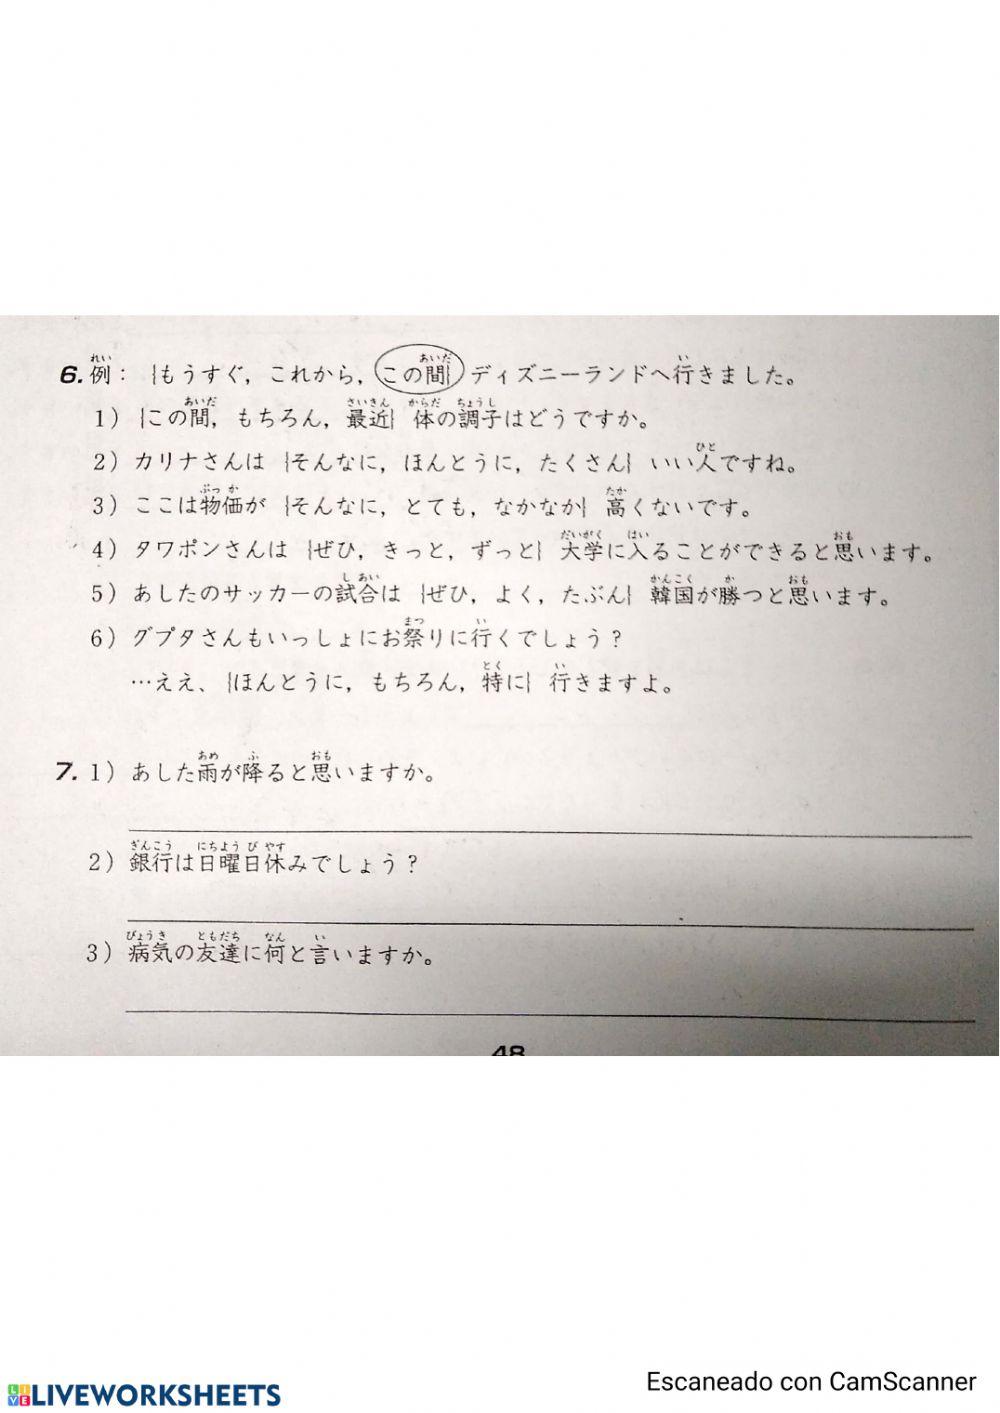 みんなの日本語第21課問題集